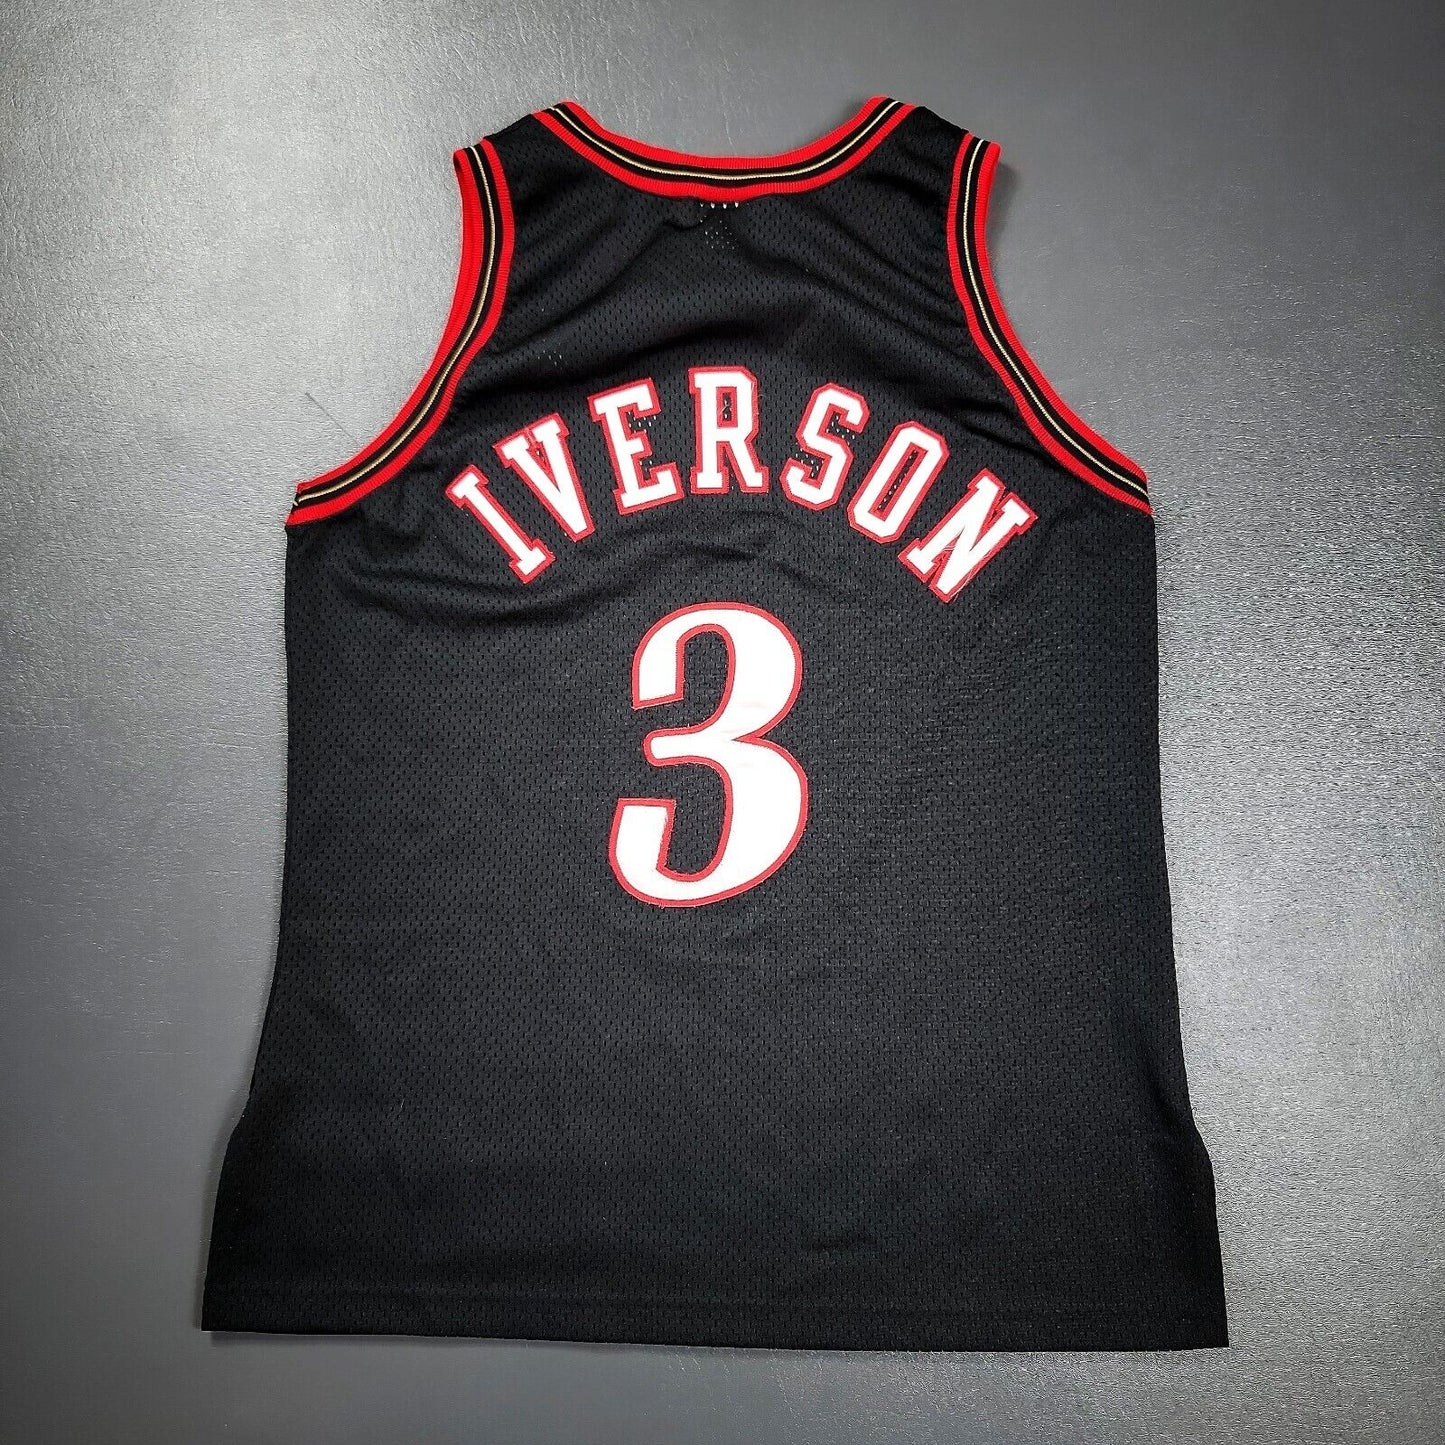 100% Authentic Allen Iverson Vintage Champion 76ers Jersey Size 44 L - pro cut